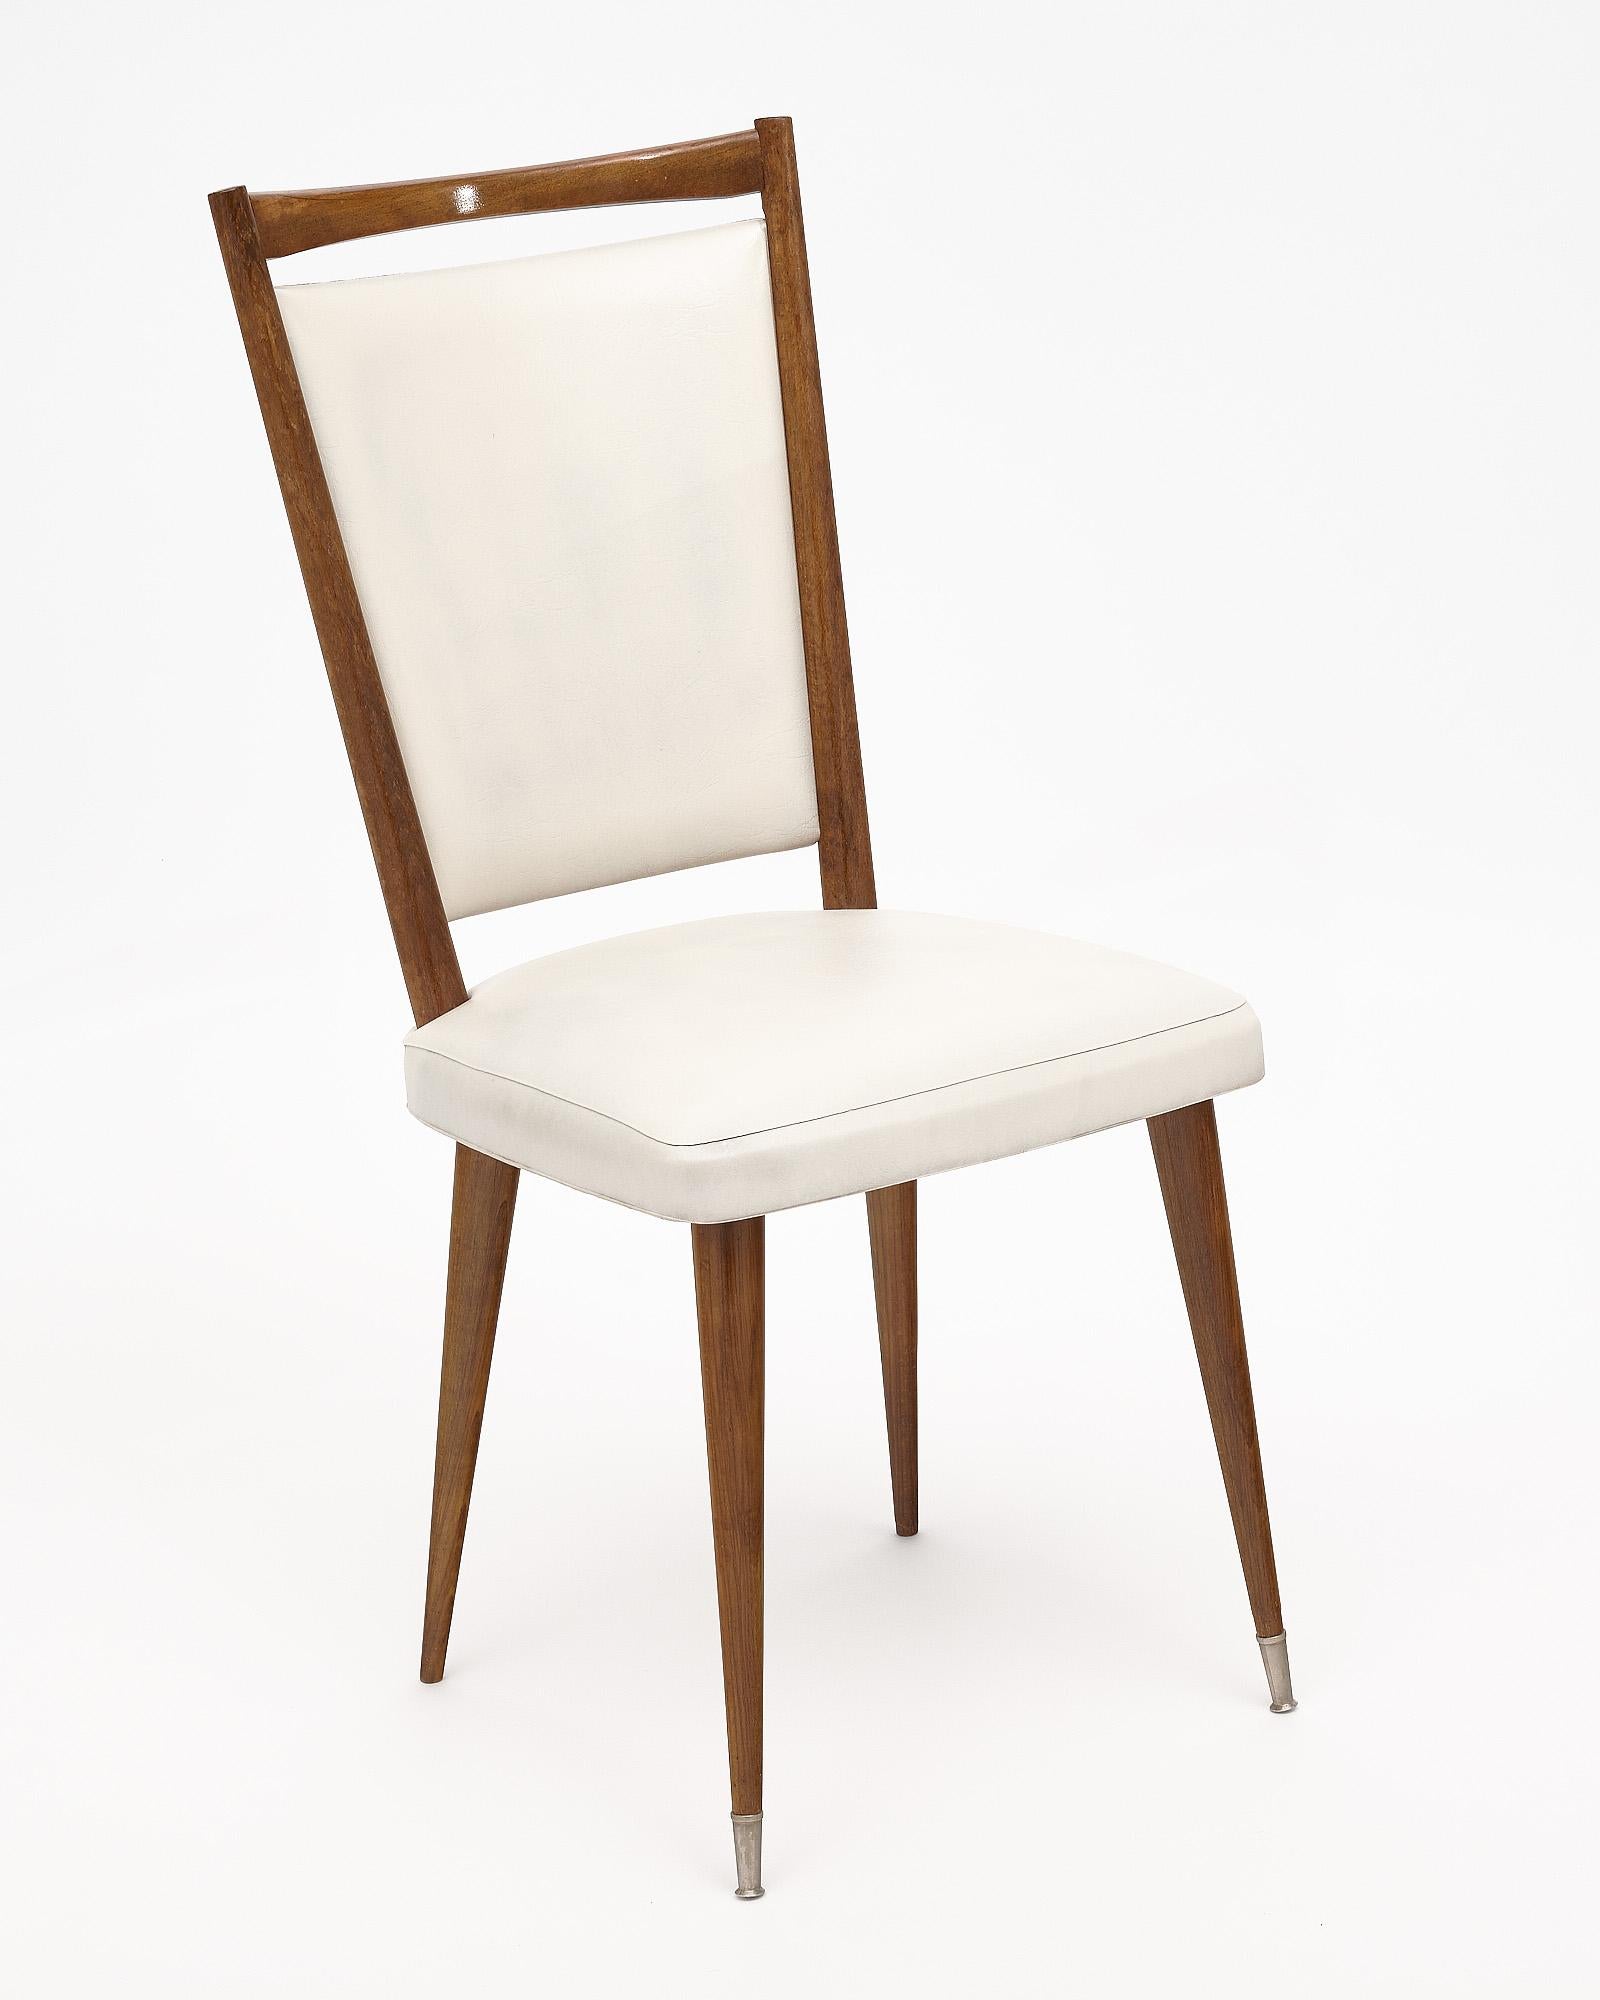 Satz von sechs Esszimmerstühlen aus der Mitte des Jahrhunderts mit einer schönen Struktur aus warmem Holz und weißer Vinylpolsterung. Sie werden von konisch zulaufenden Beinen mit Messingkappenfüßen getragen.
